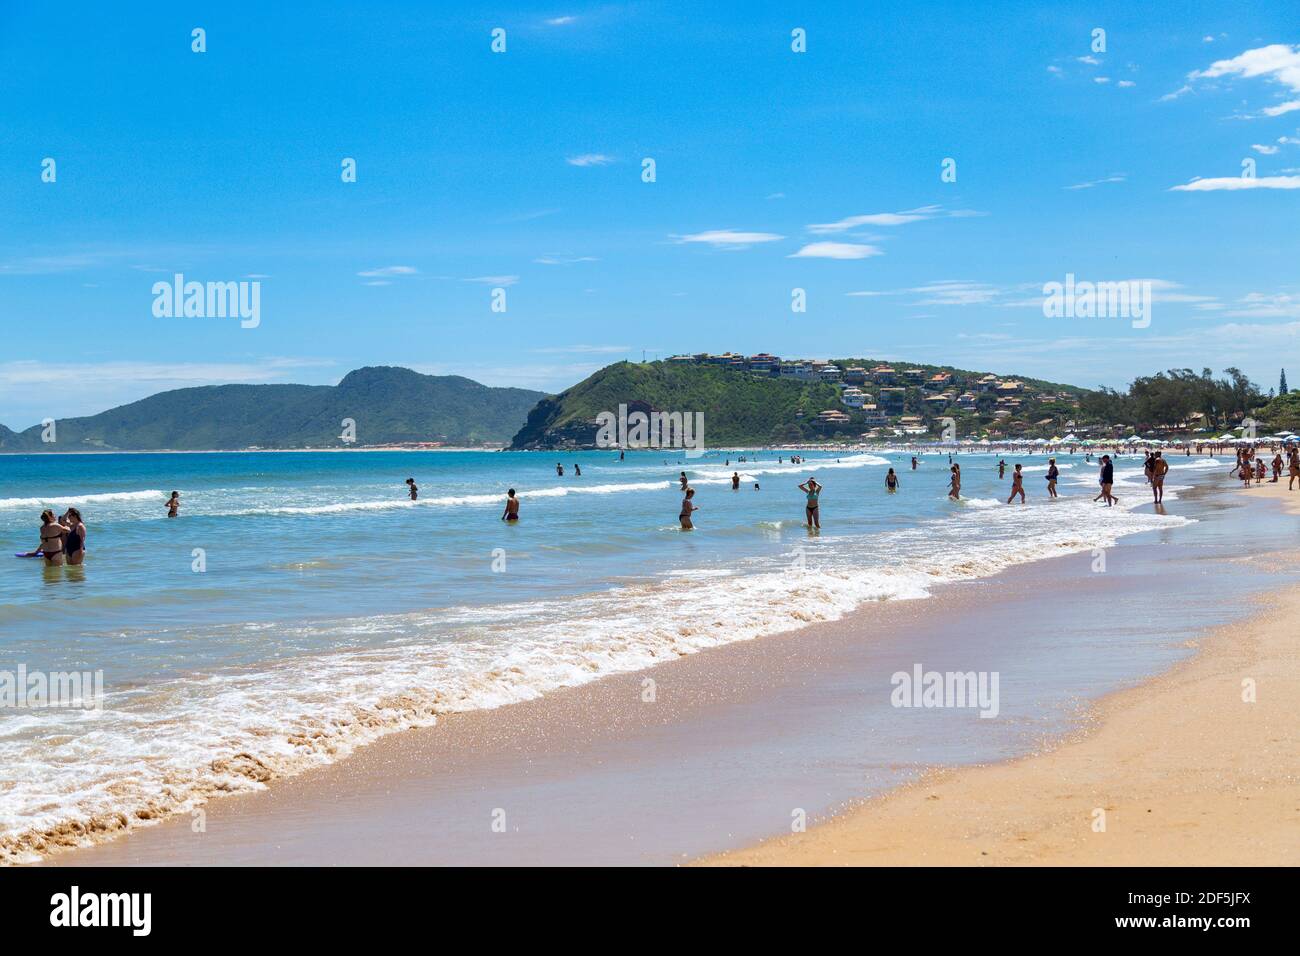 Buzios, Rio de Janeiro, Brasile – 22 dicembre 2019: Praia da Geriba, Vista panoramica di questa bellissima spiaggia. La gente che bagna nelle acque turqoise. Foto Stock